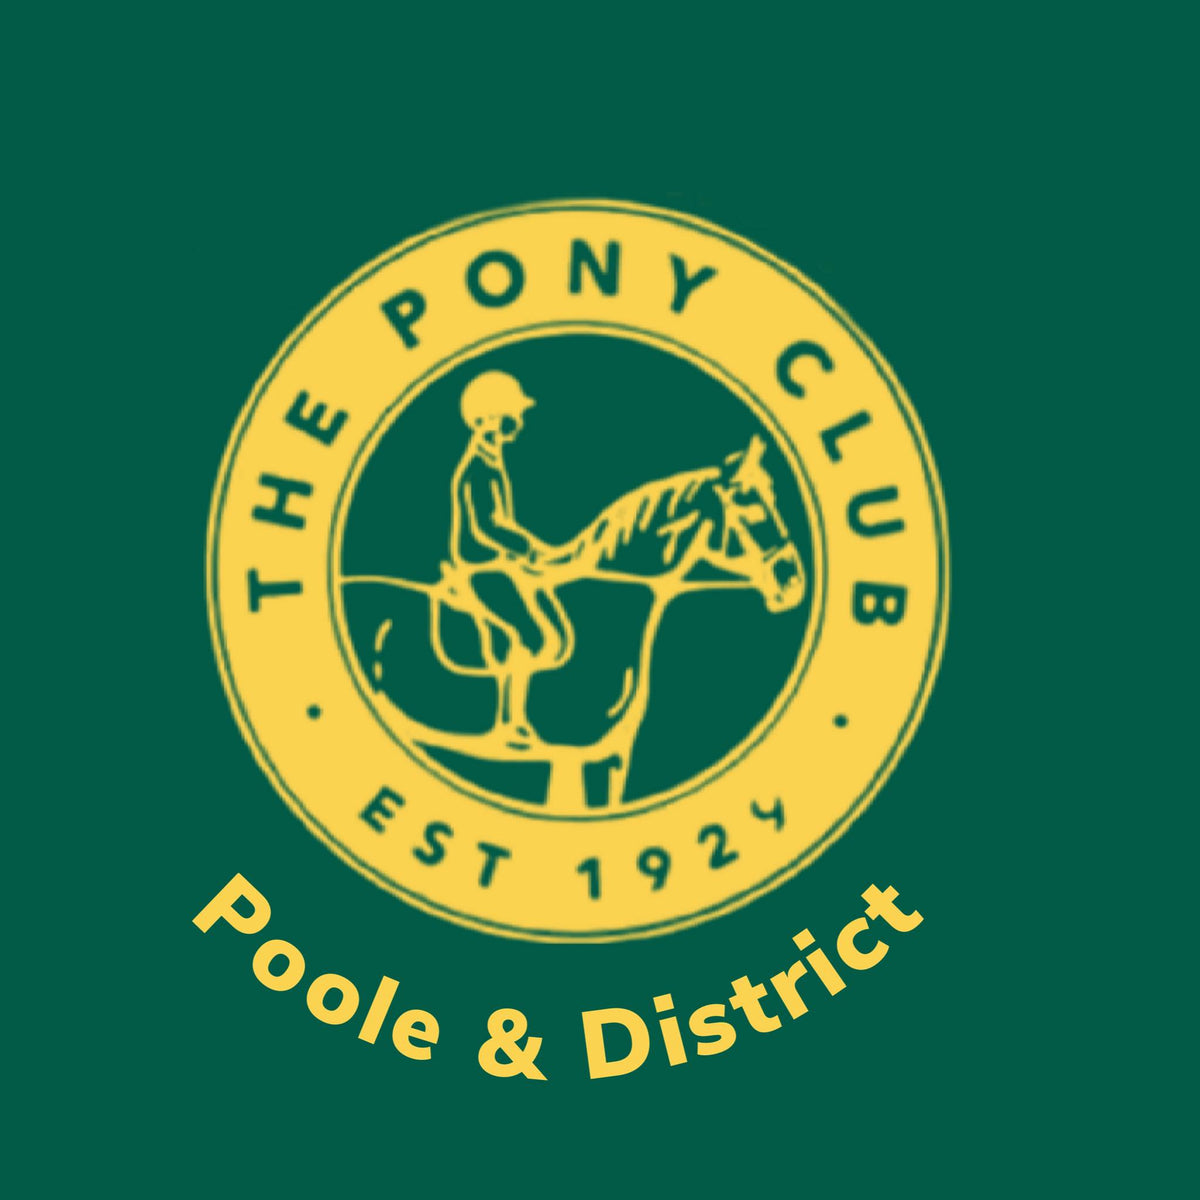 Poole & District Pony Club